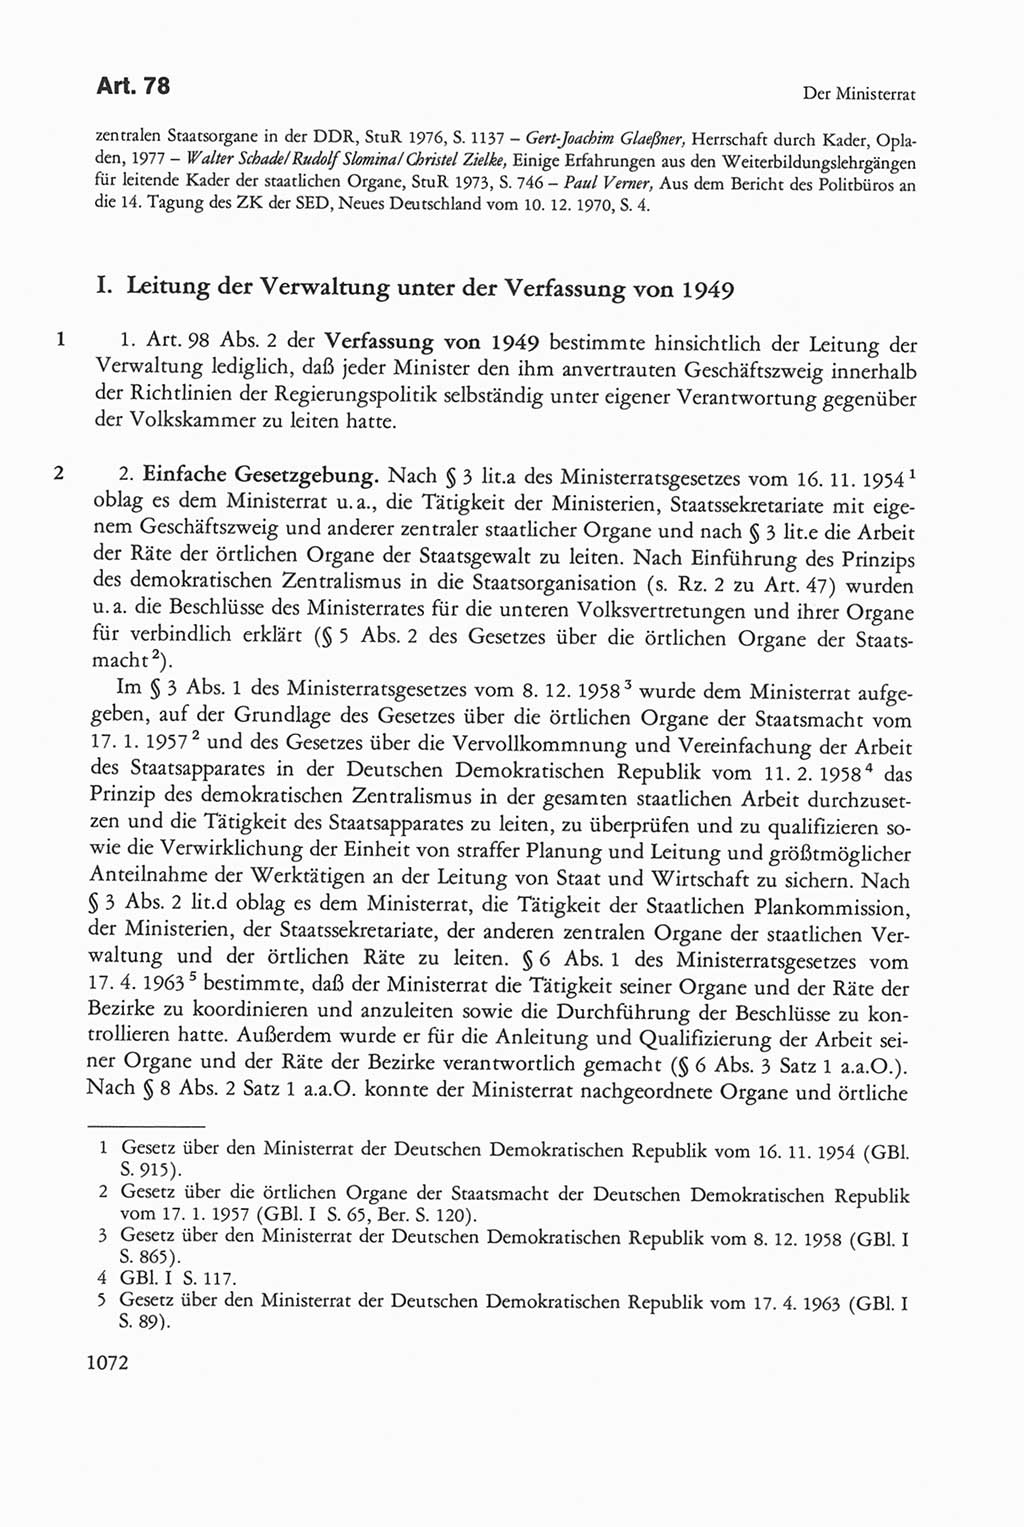 Die sozialistische Verfassung der Deutschen Demokratischen Republik (DDR), Kommentar mit einem Nachtrag 1997, Seite 1072 (Soz. Verf. DDR Komm. Nachtr. 1997, S. 1072)